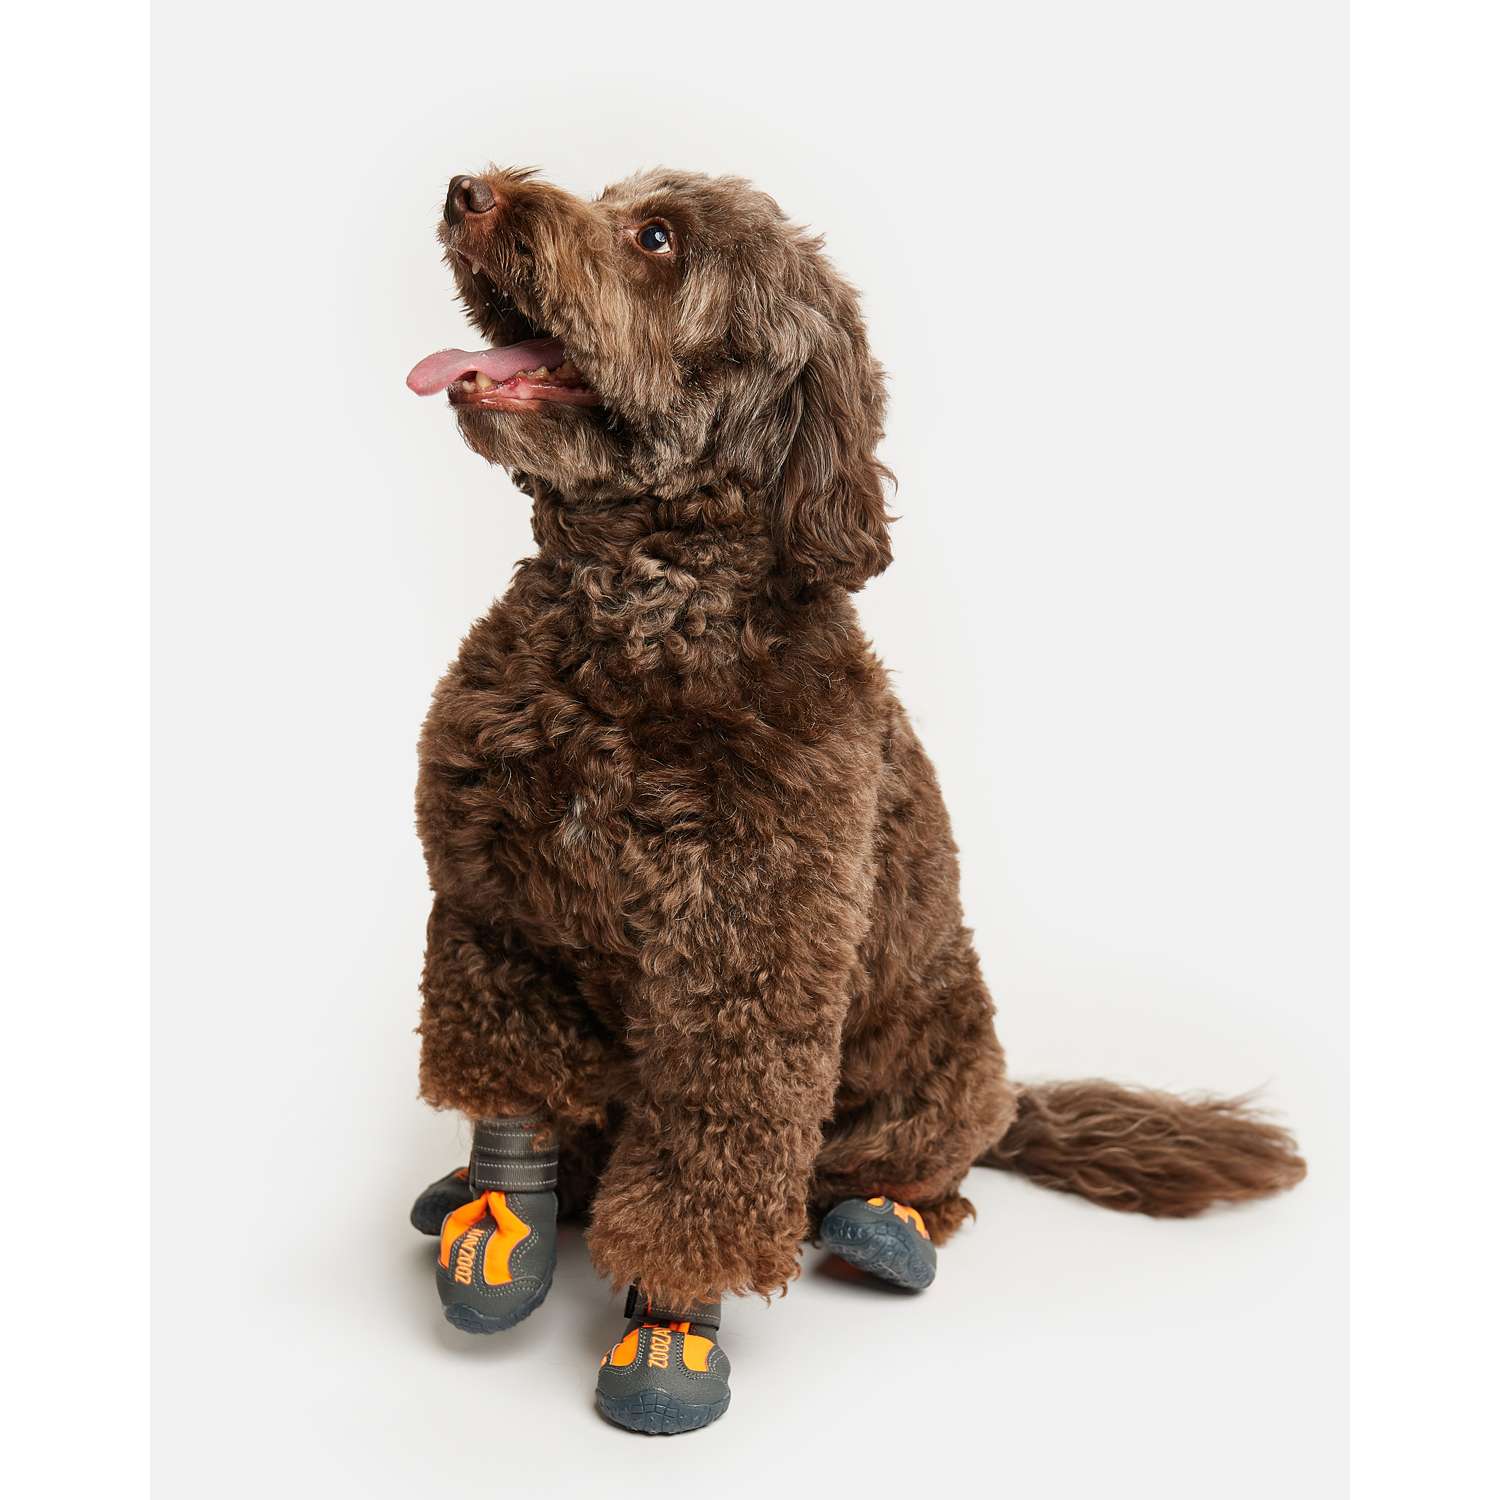 Купить обувь и носки для собак в интернет магазине kormstroytorg.ru